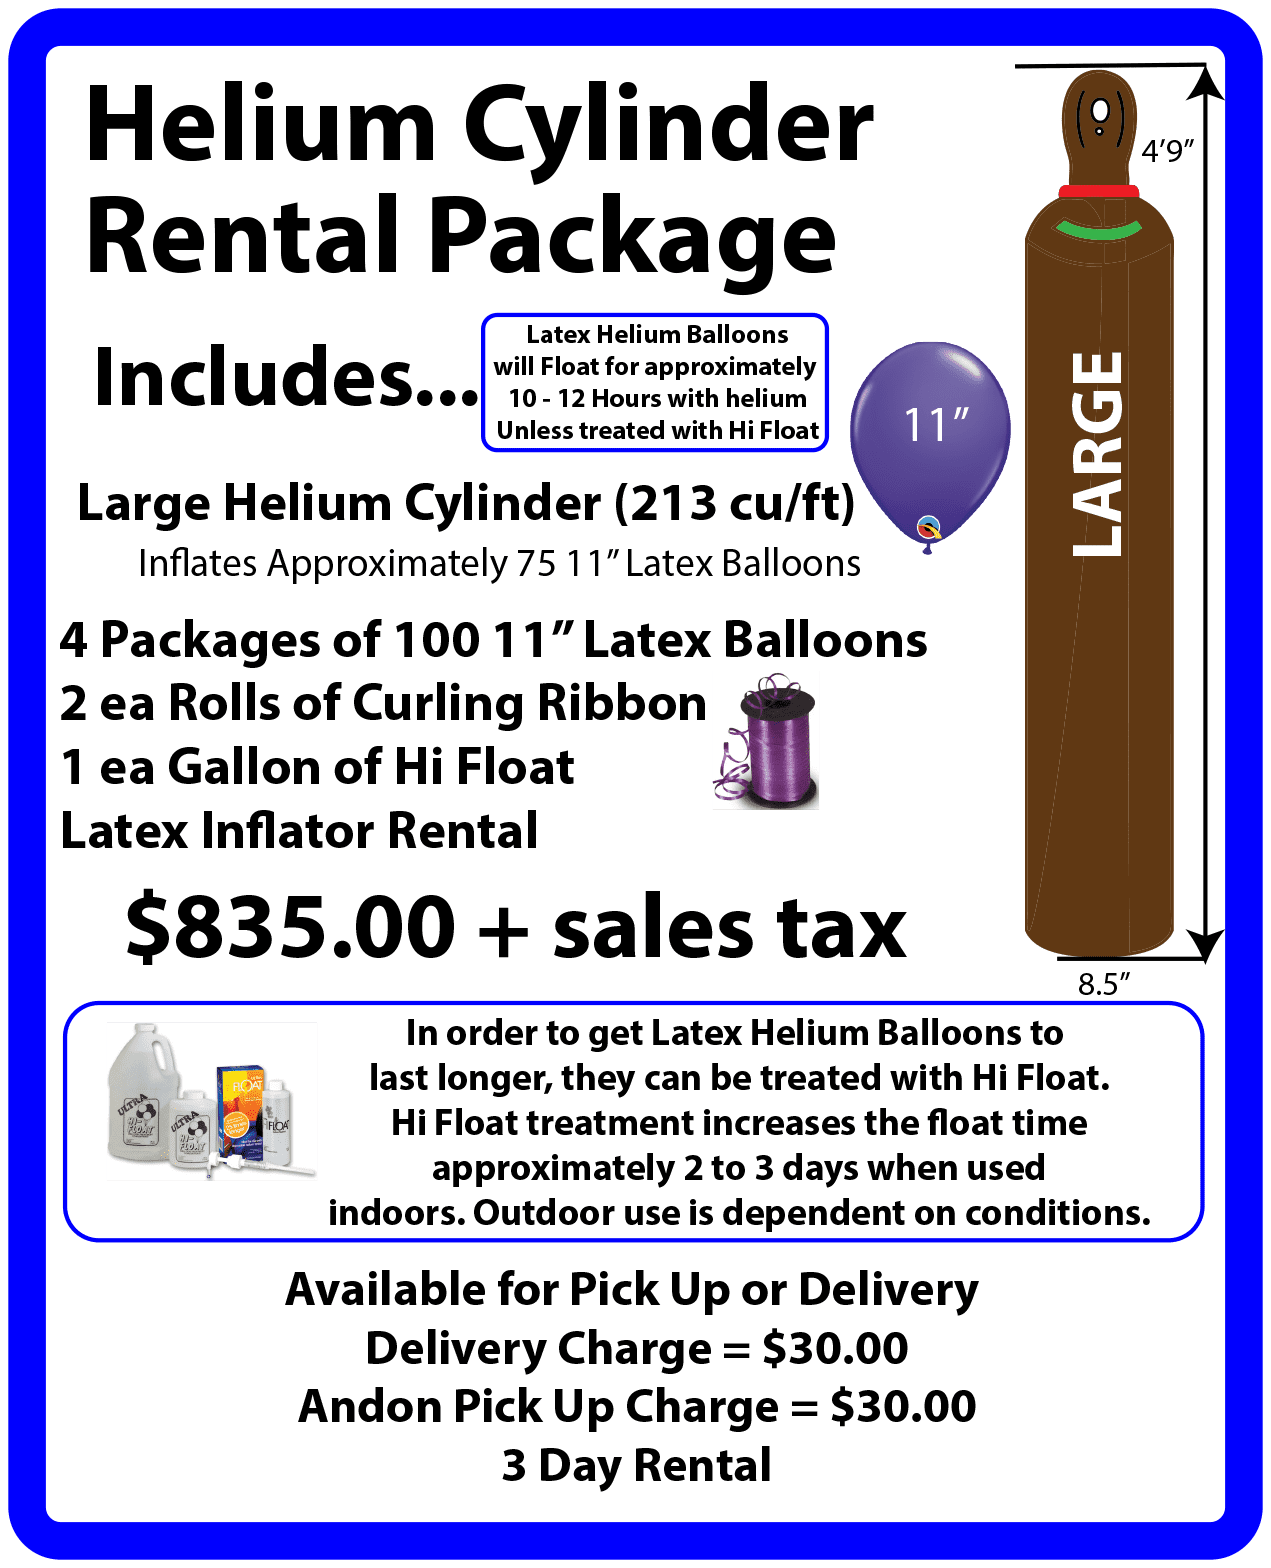 Large helium rental package